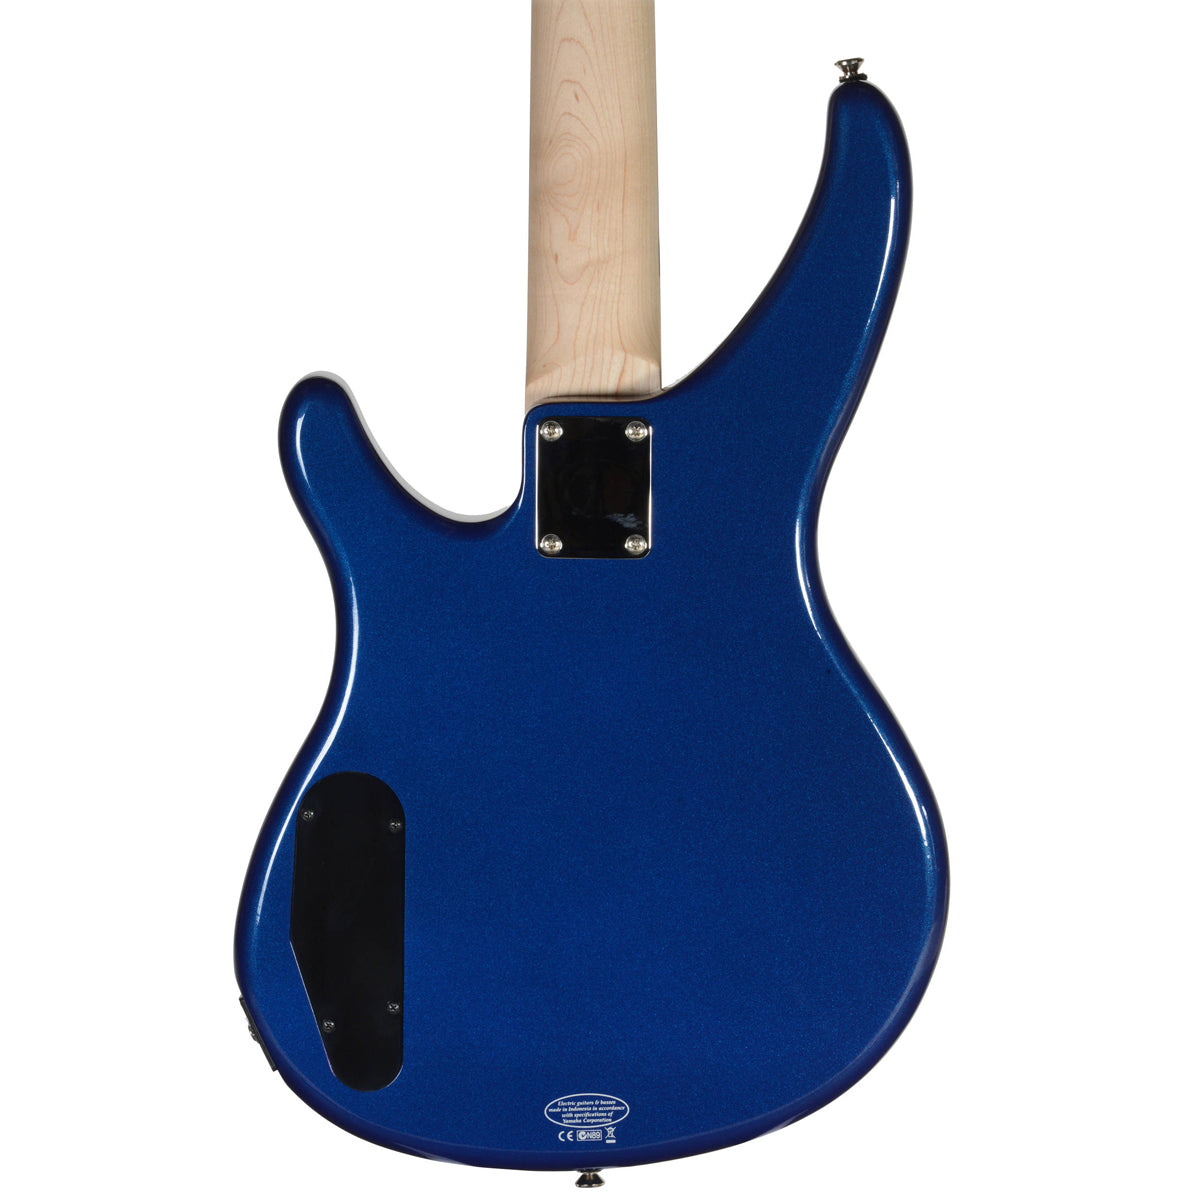 Yamaha TRBX174 Electric Bass Guitar Blue Metallic